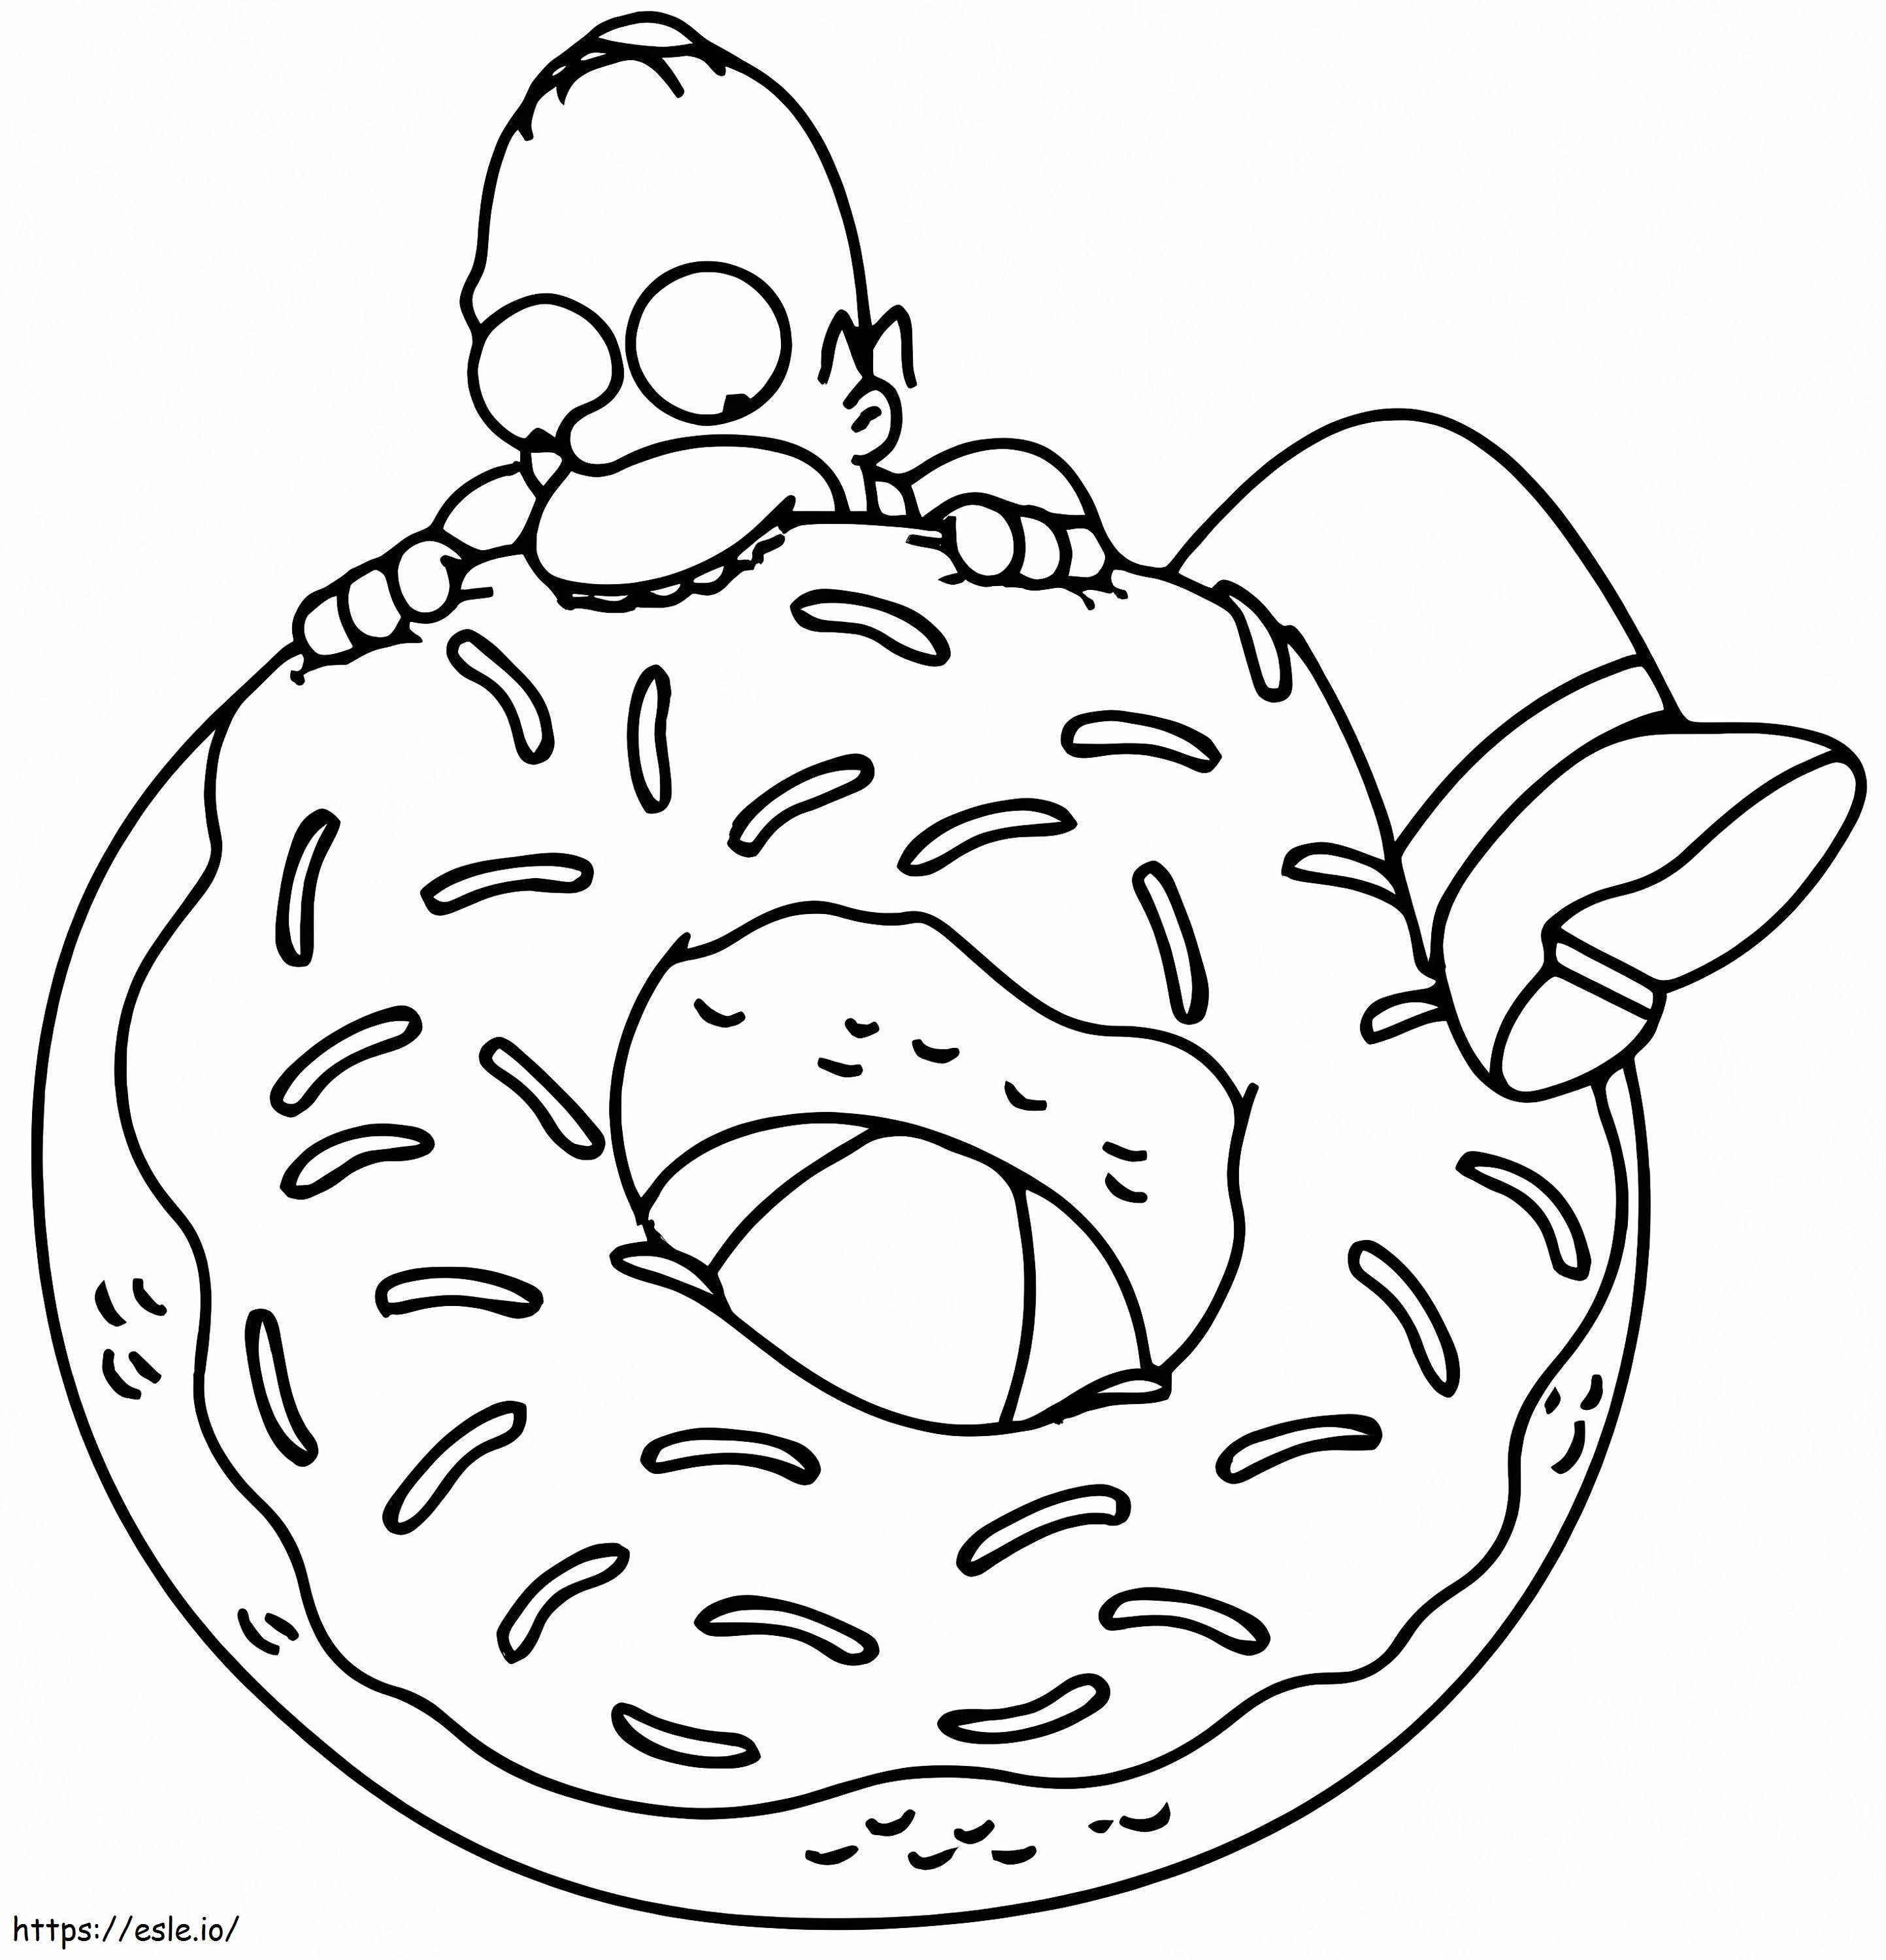 Homer Simpson isst Donut ausmalbilder